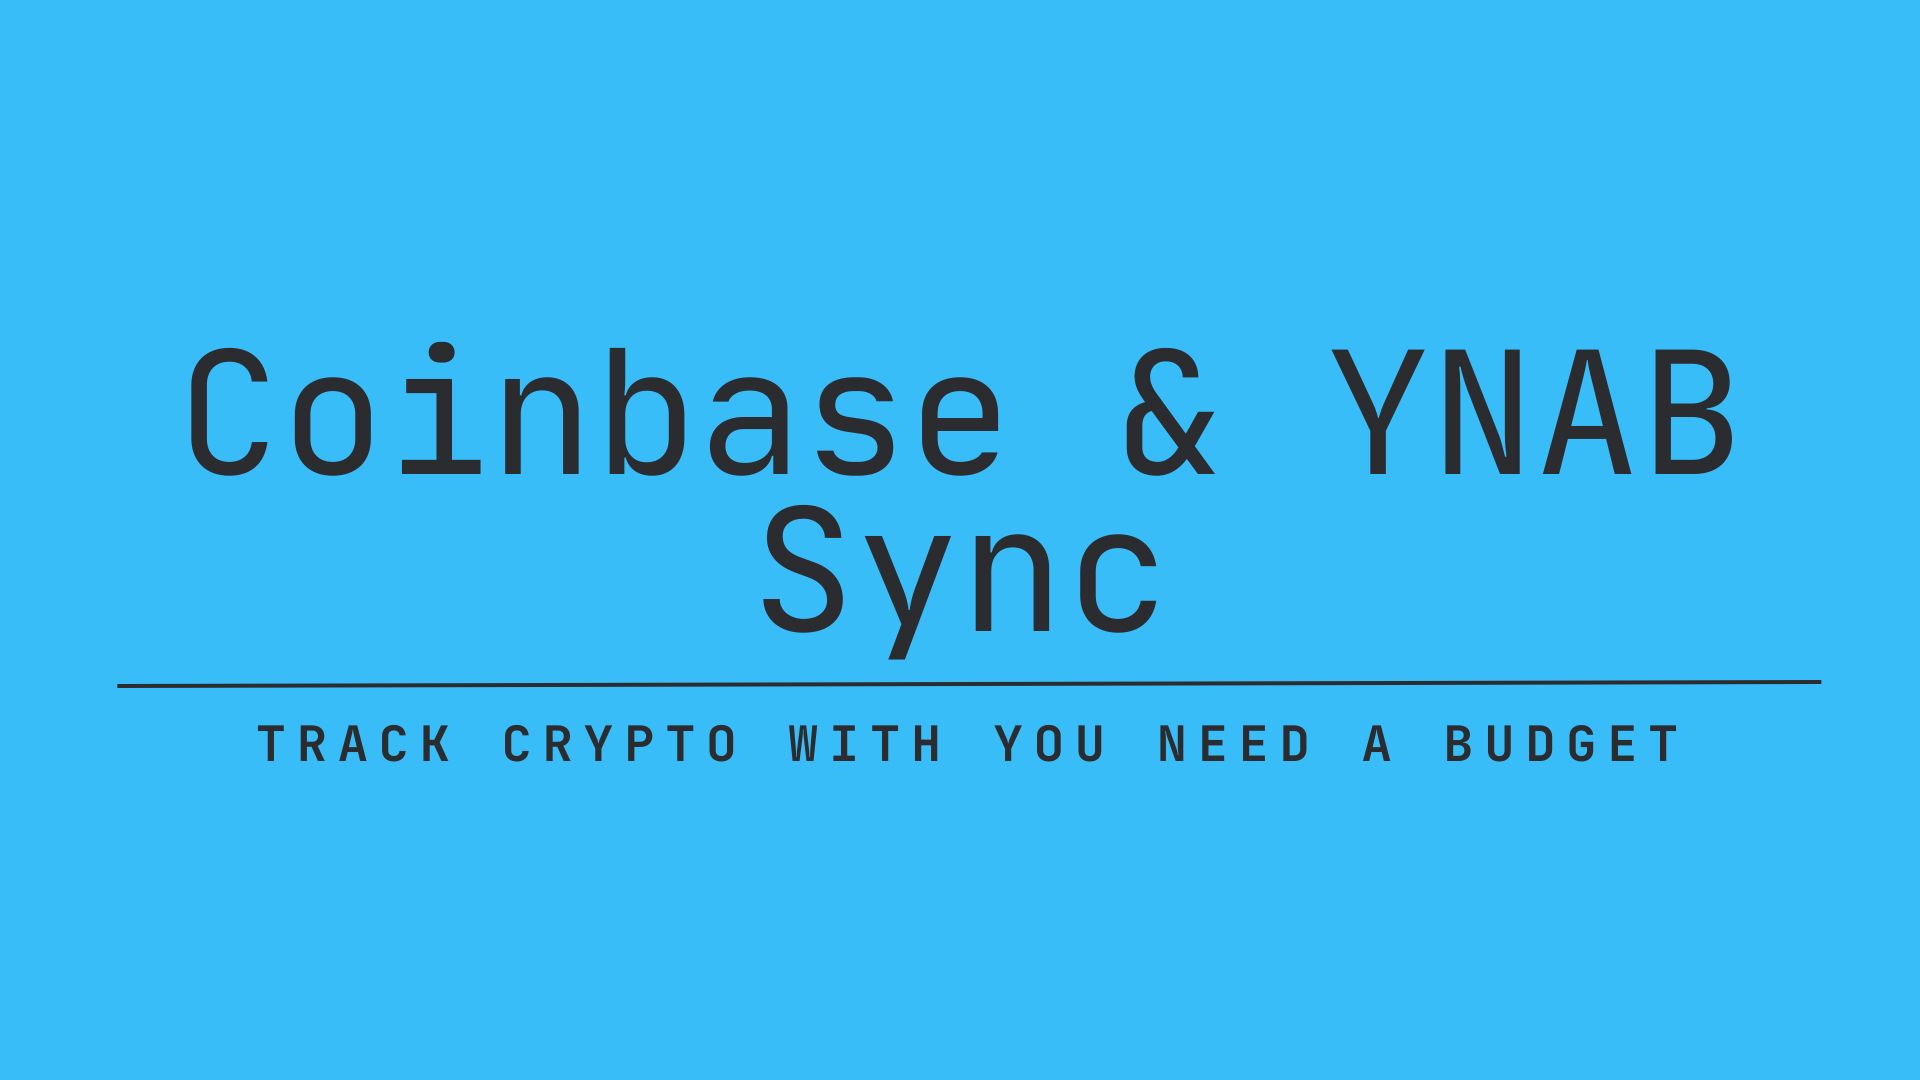 Coinbase & YNAB Sync header image